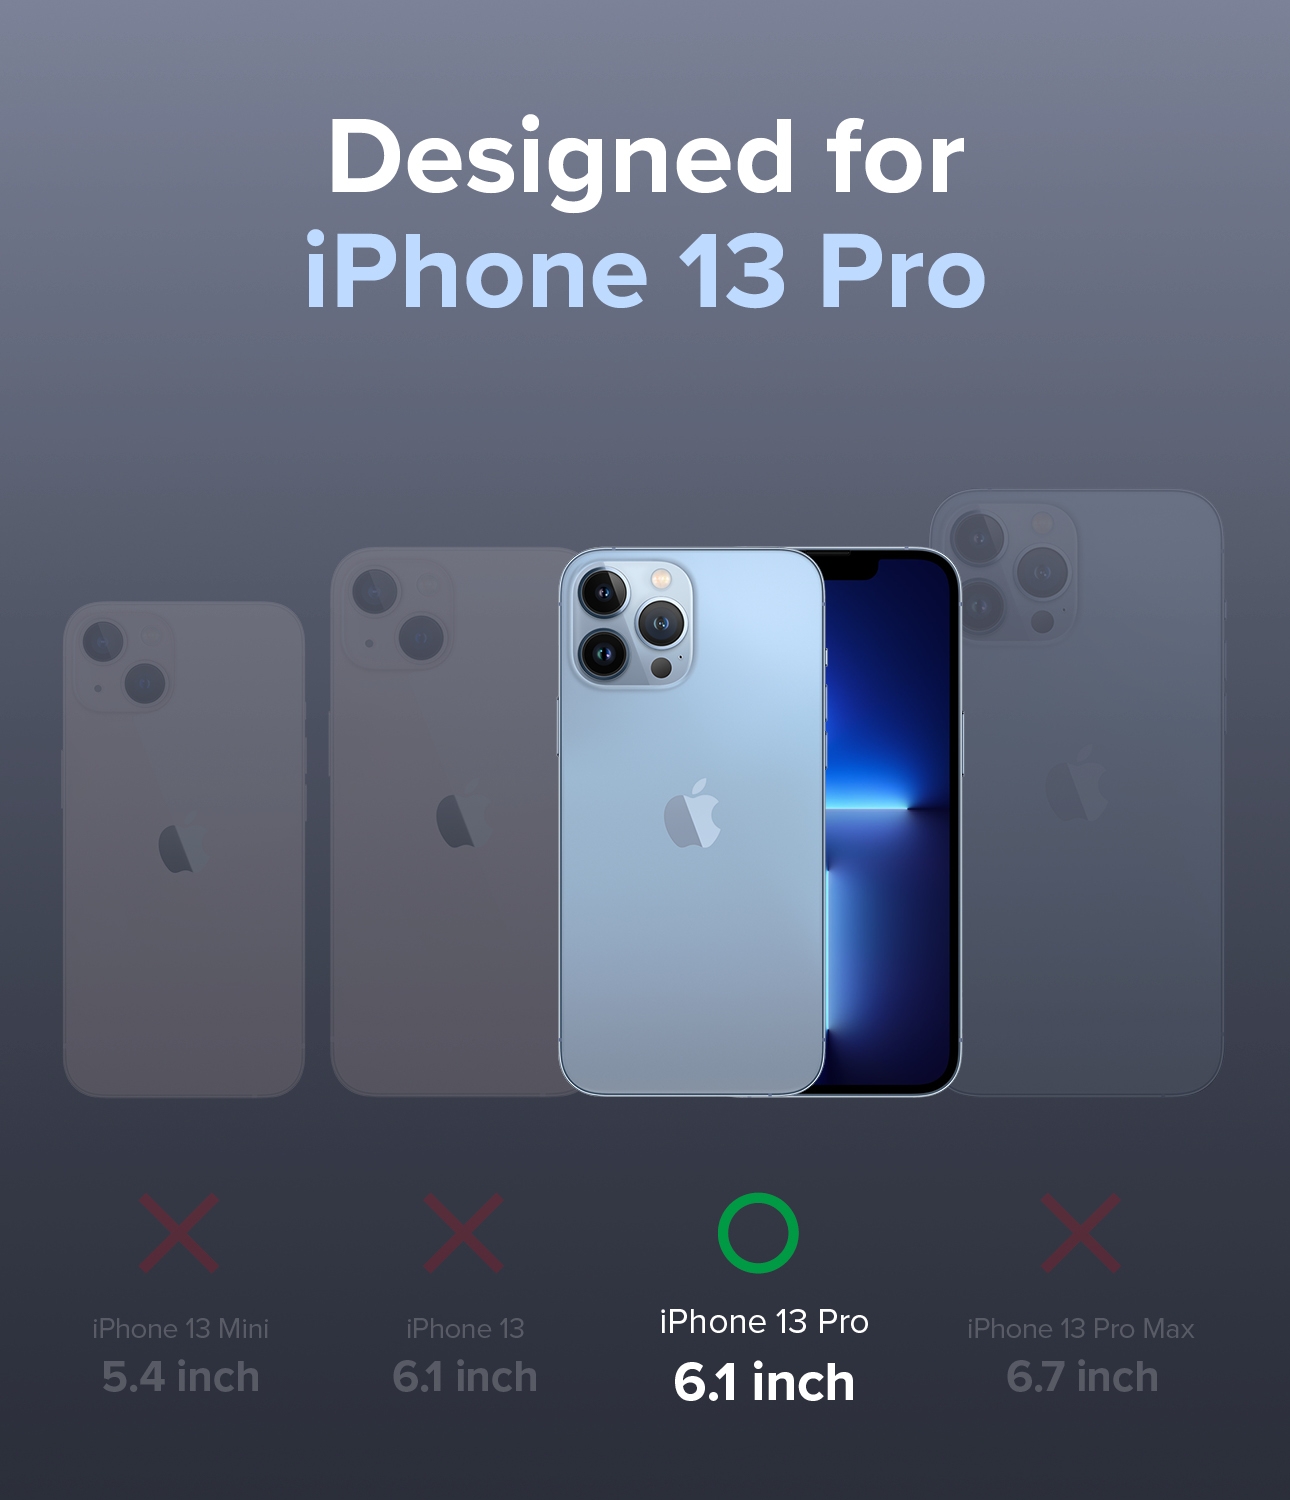 كفر آيفون مقاوم للصدمات - زهري Ringke Cover for iPhone 13 Pro Case